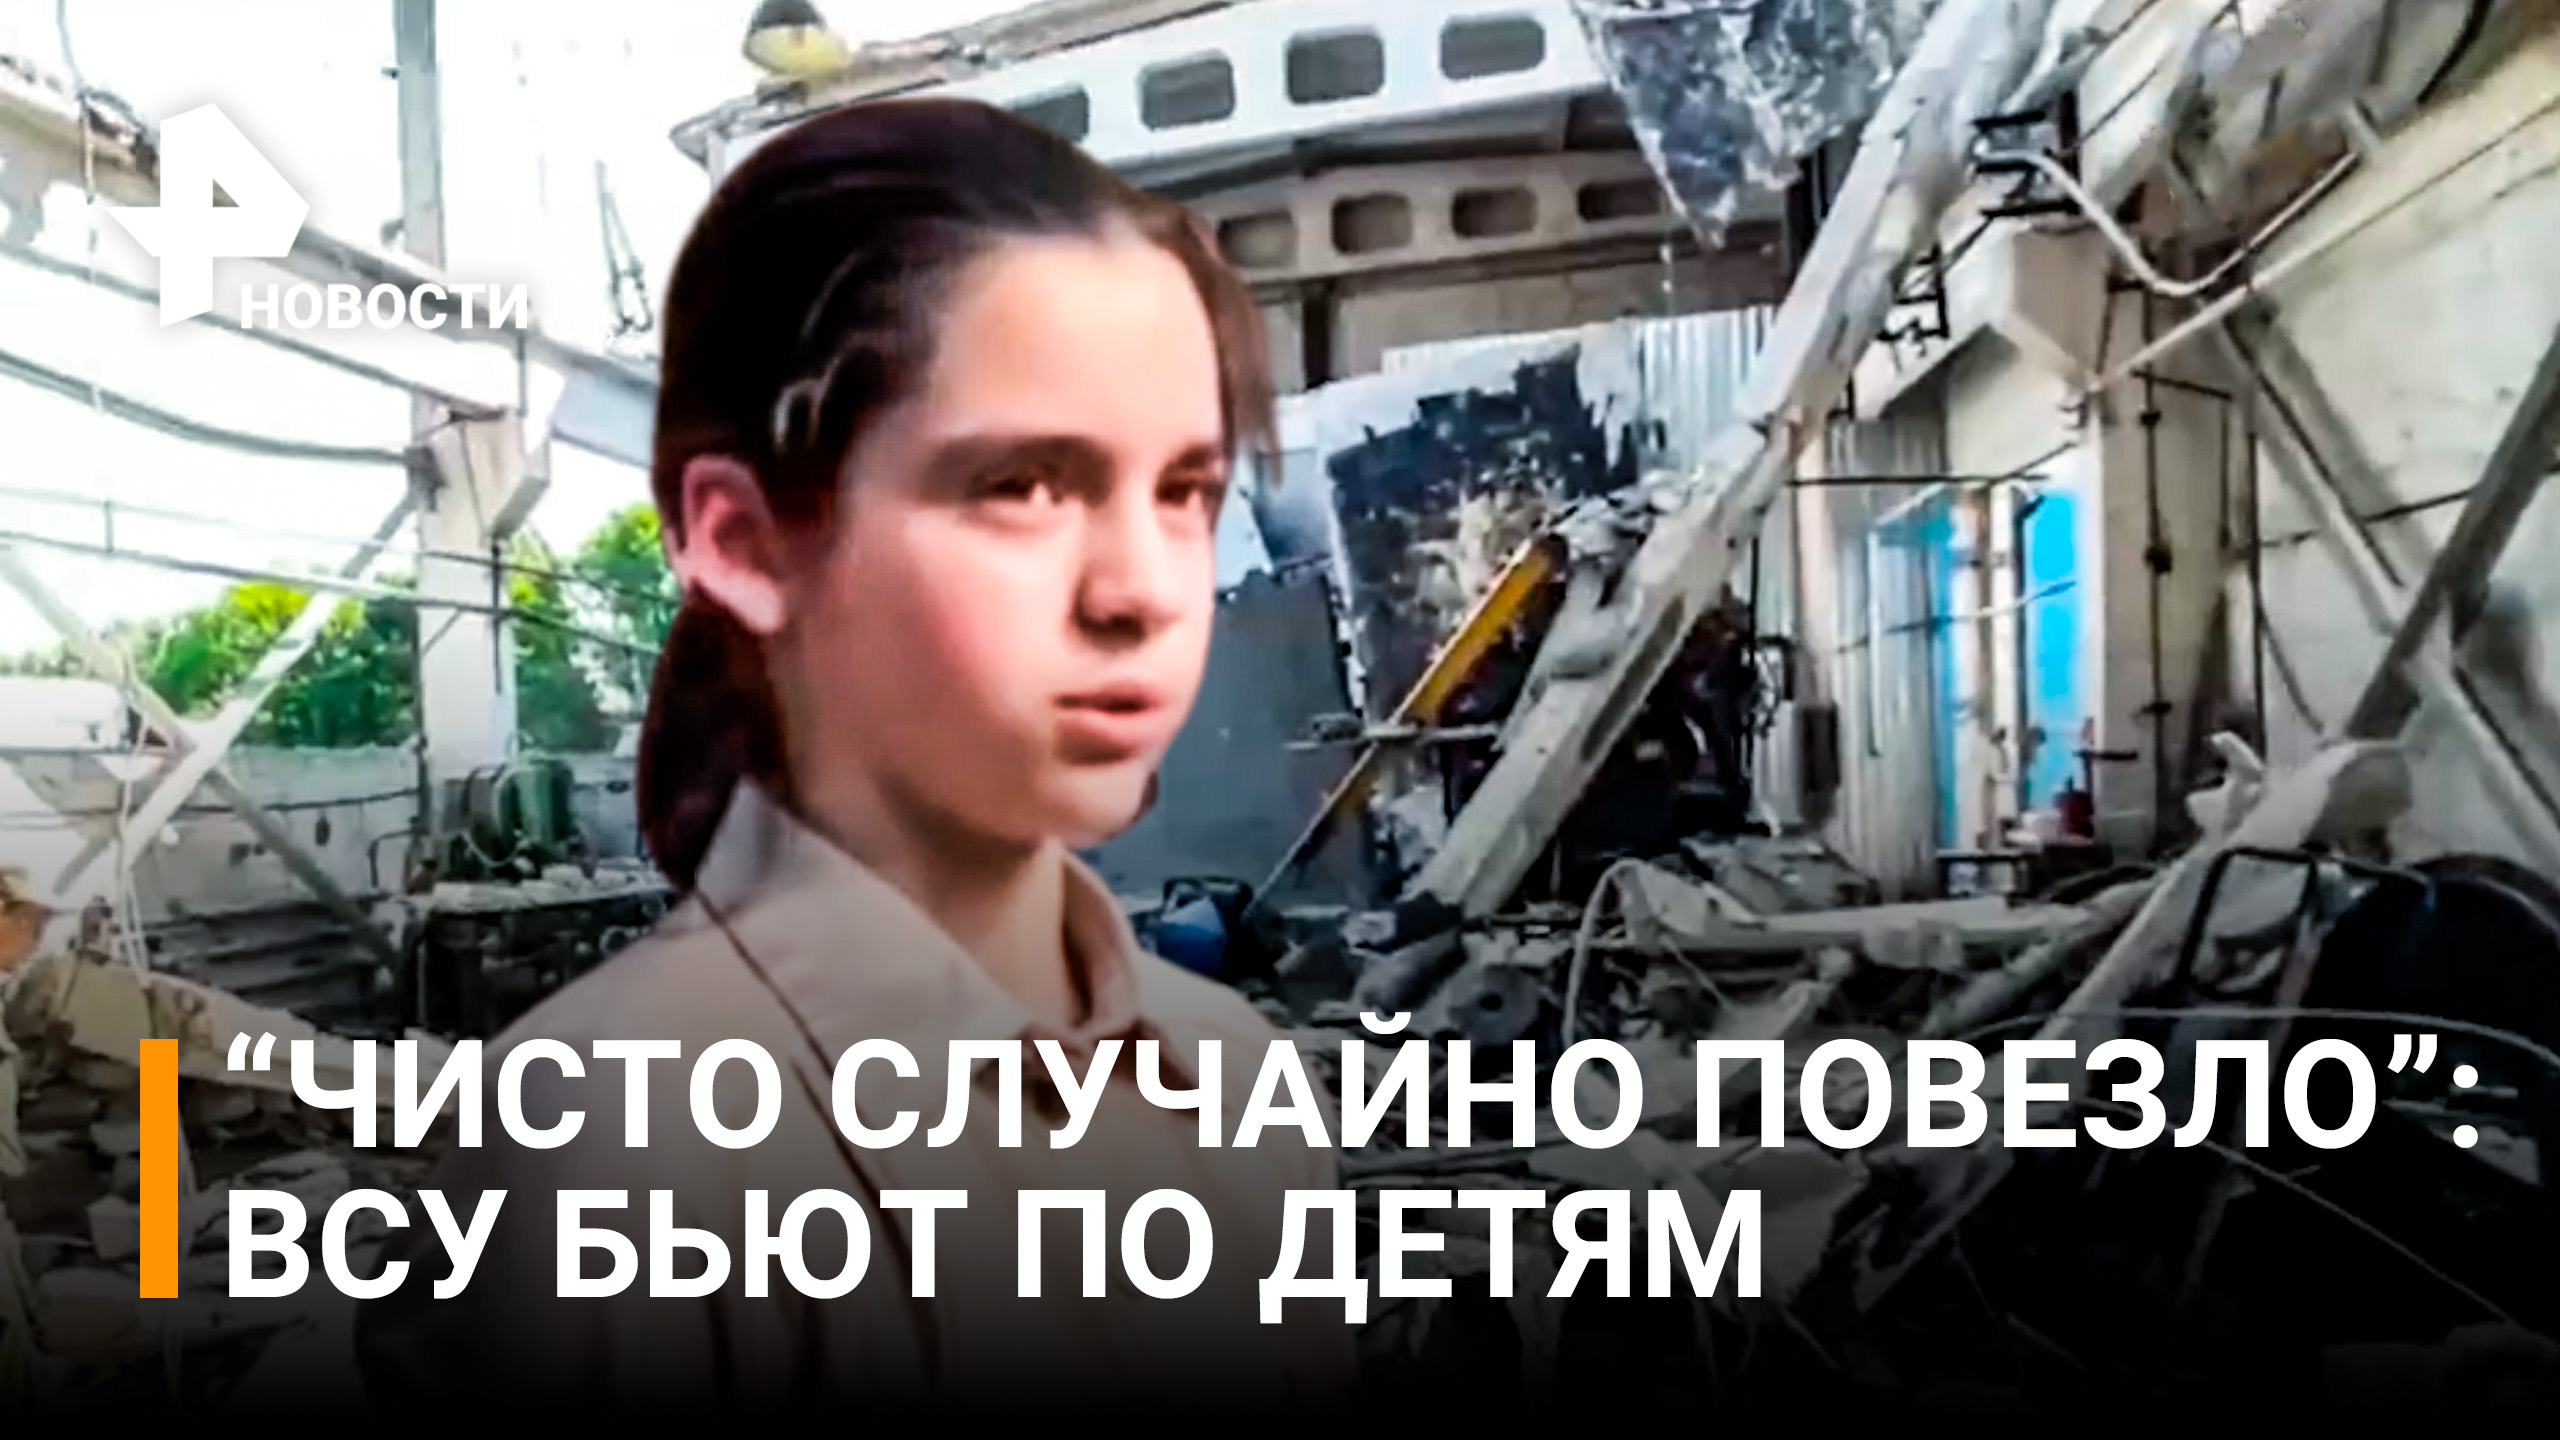 Детский сад стал одной из целей обстрелов ВСУ по Донецку / РЕН Новости